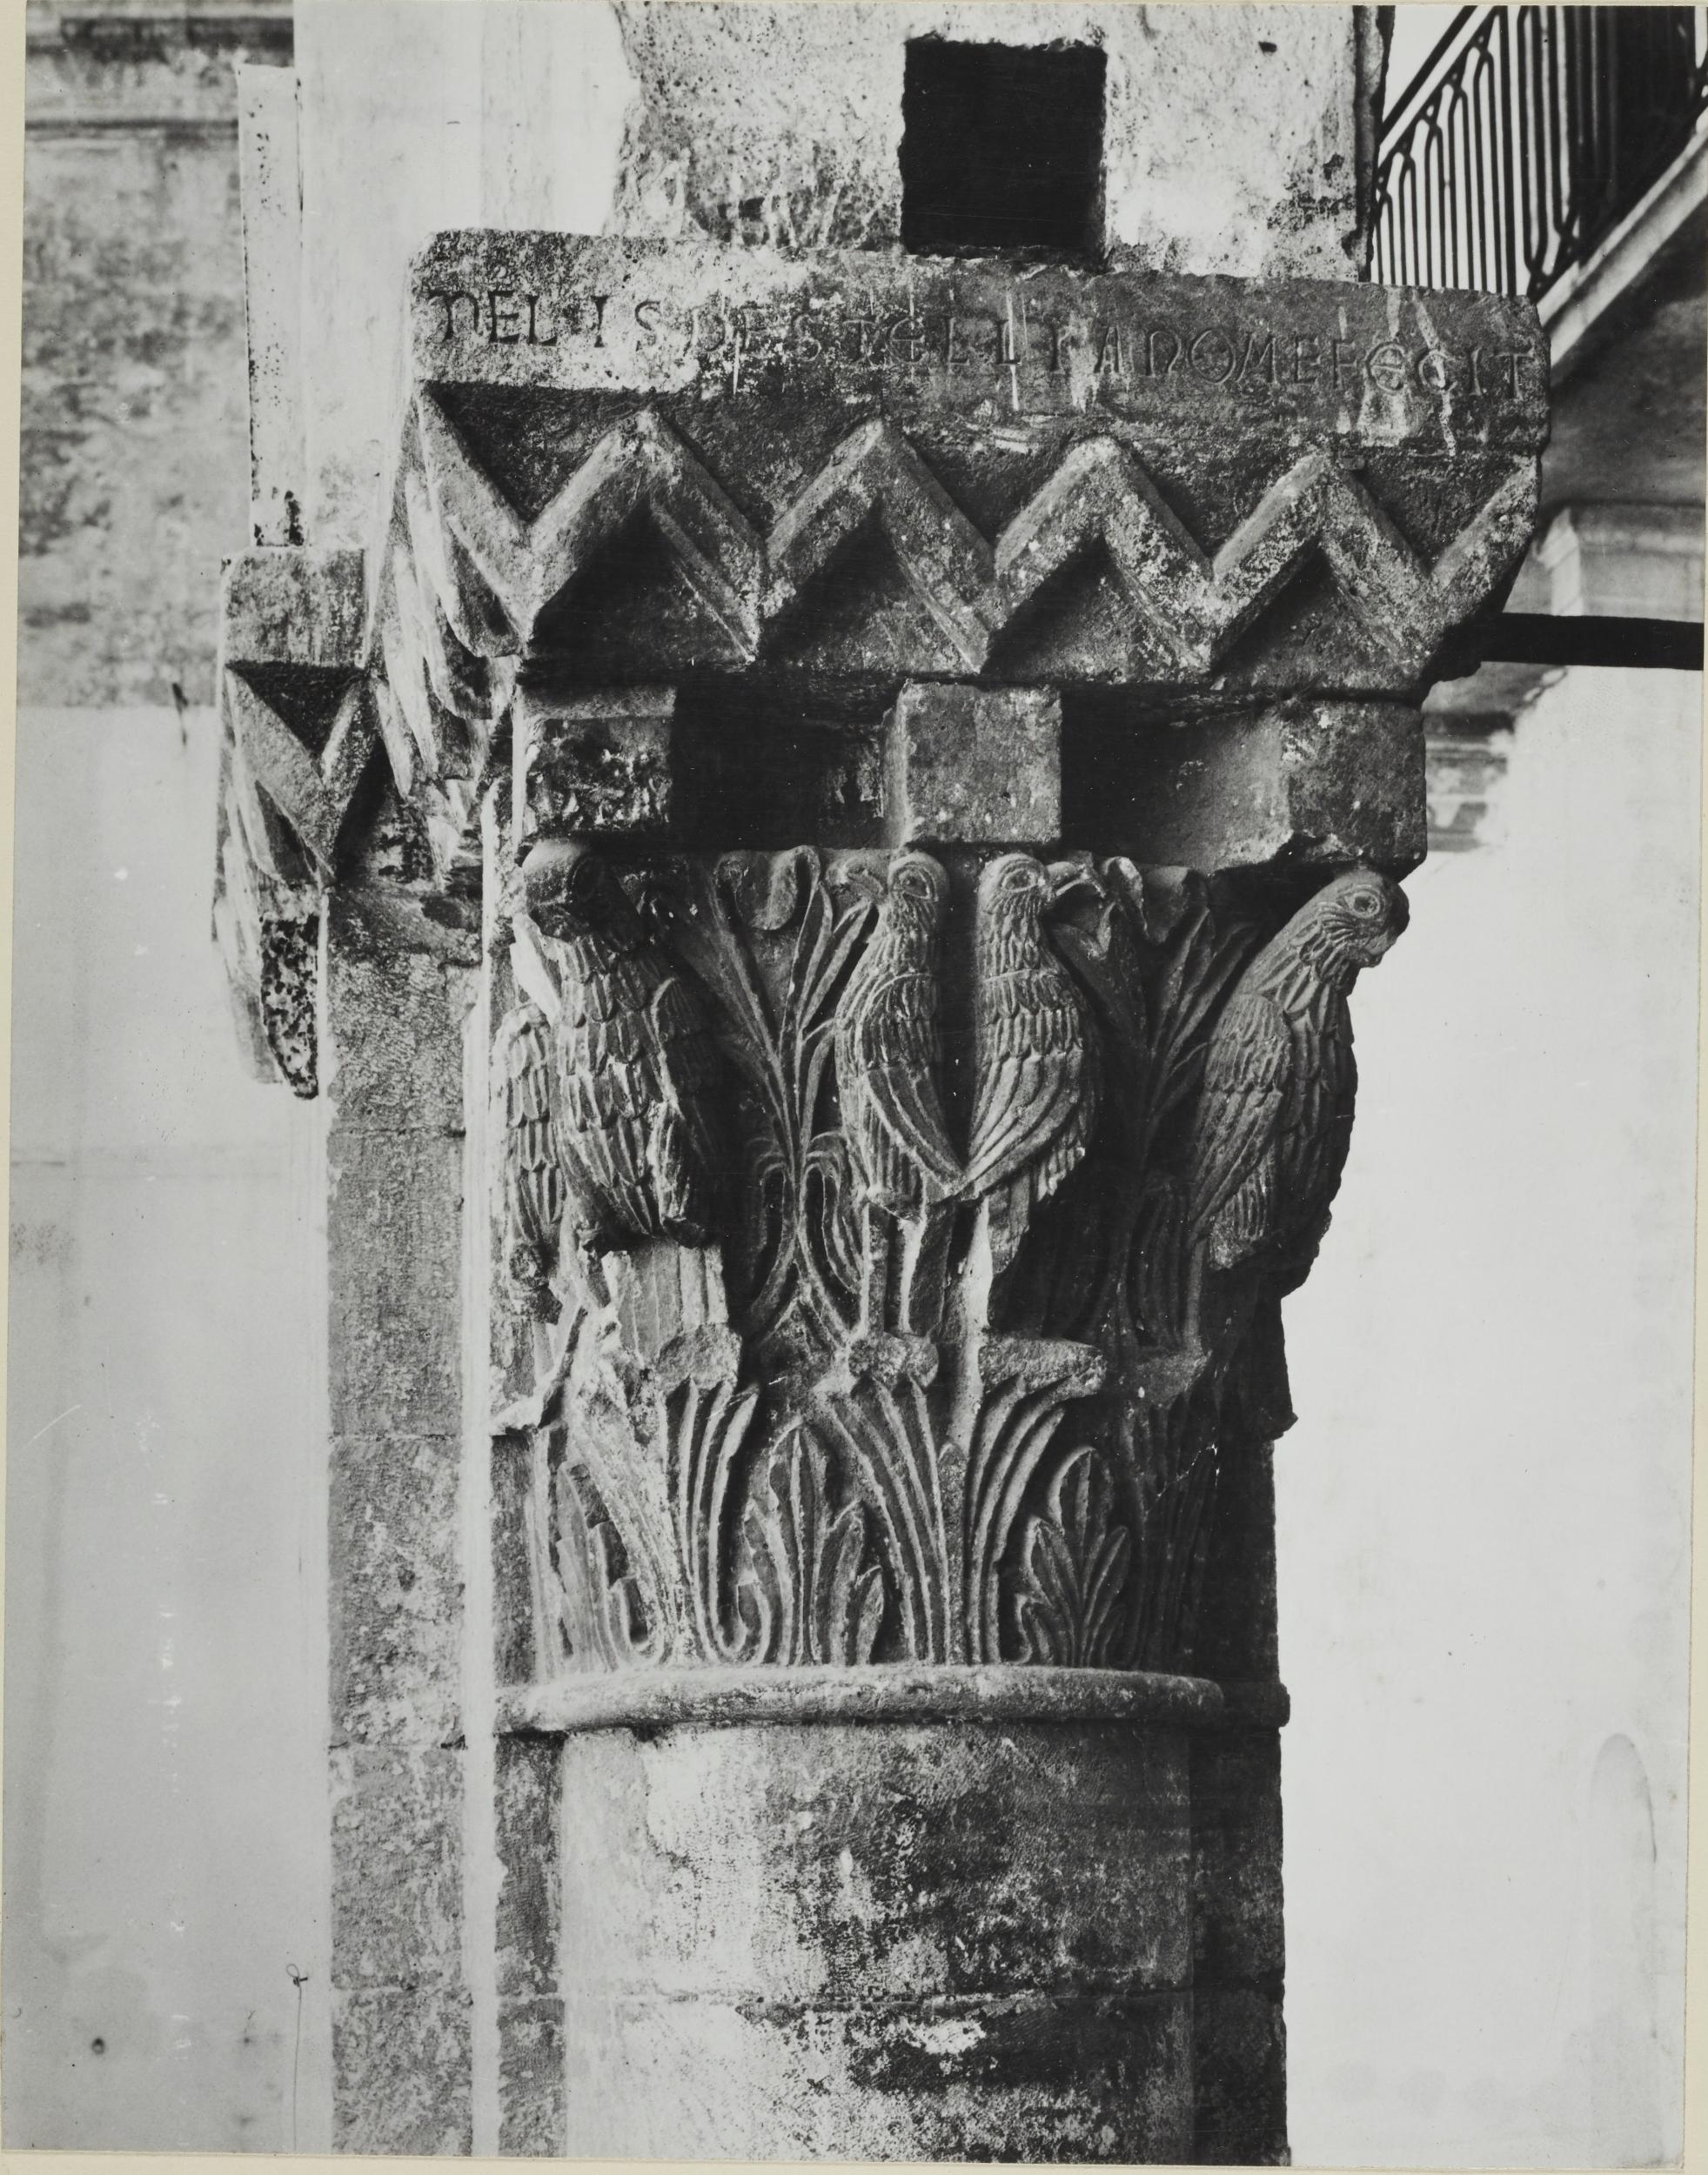 Fotografo non identificato, Bari - Castello Svevo , loggia cortile sud-est, capitello con pulvino, 1951-1975, albumina/carta, MPI6023073B